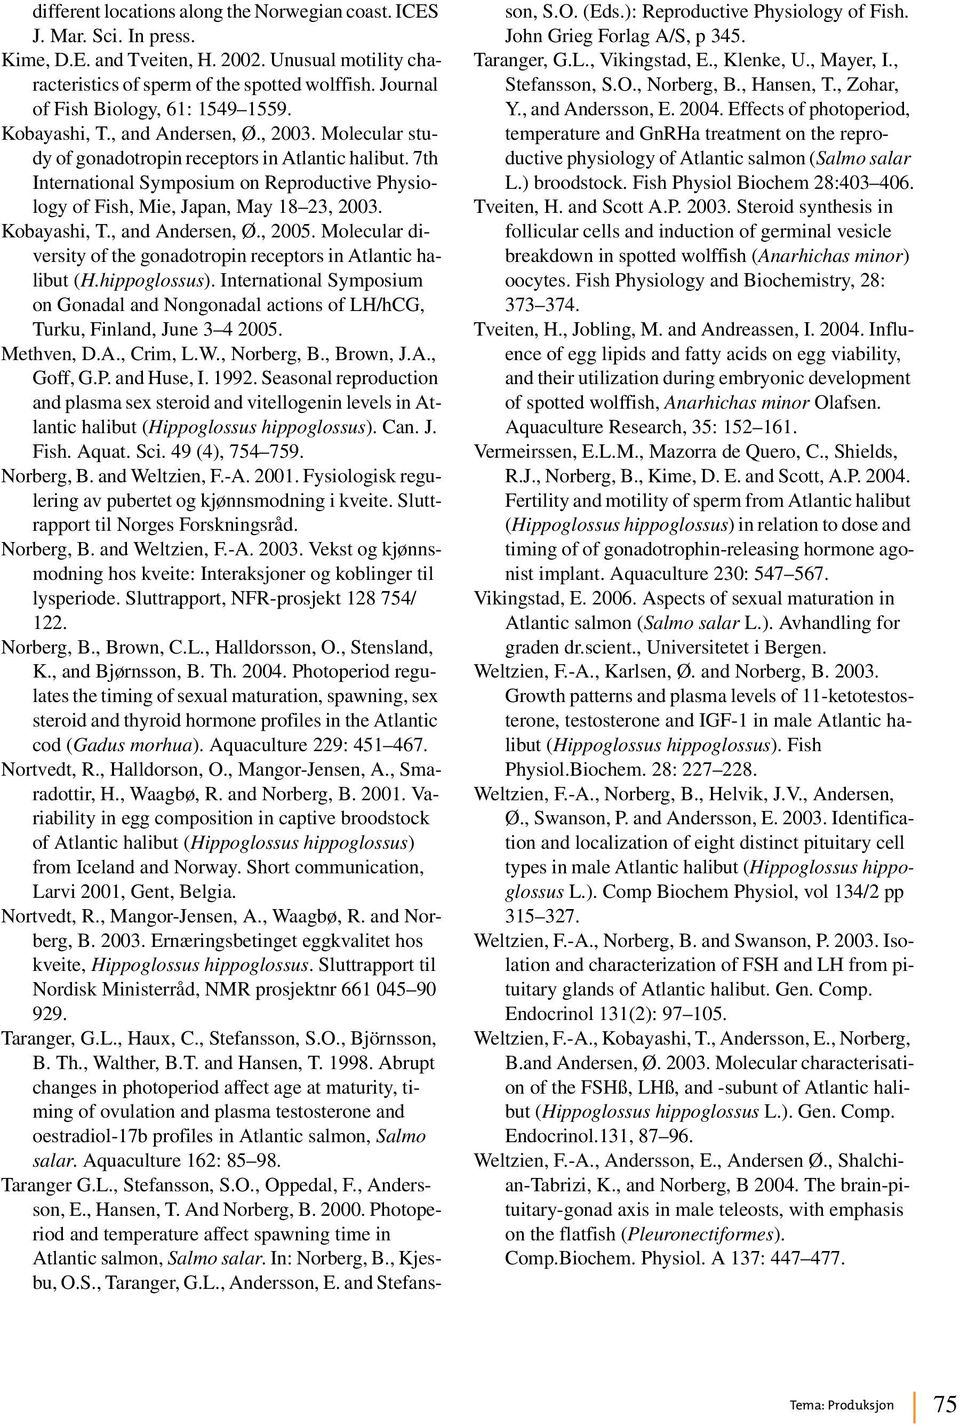 7th International Symposium on Reproductive Physiology of Fish, Mie, Japan, May 18 23, 2003. Kobayashi, T., and Andersen, Ø., 2005.